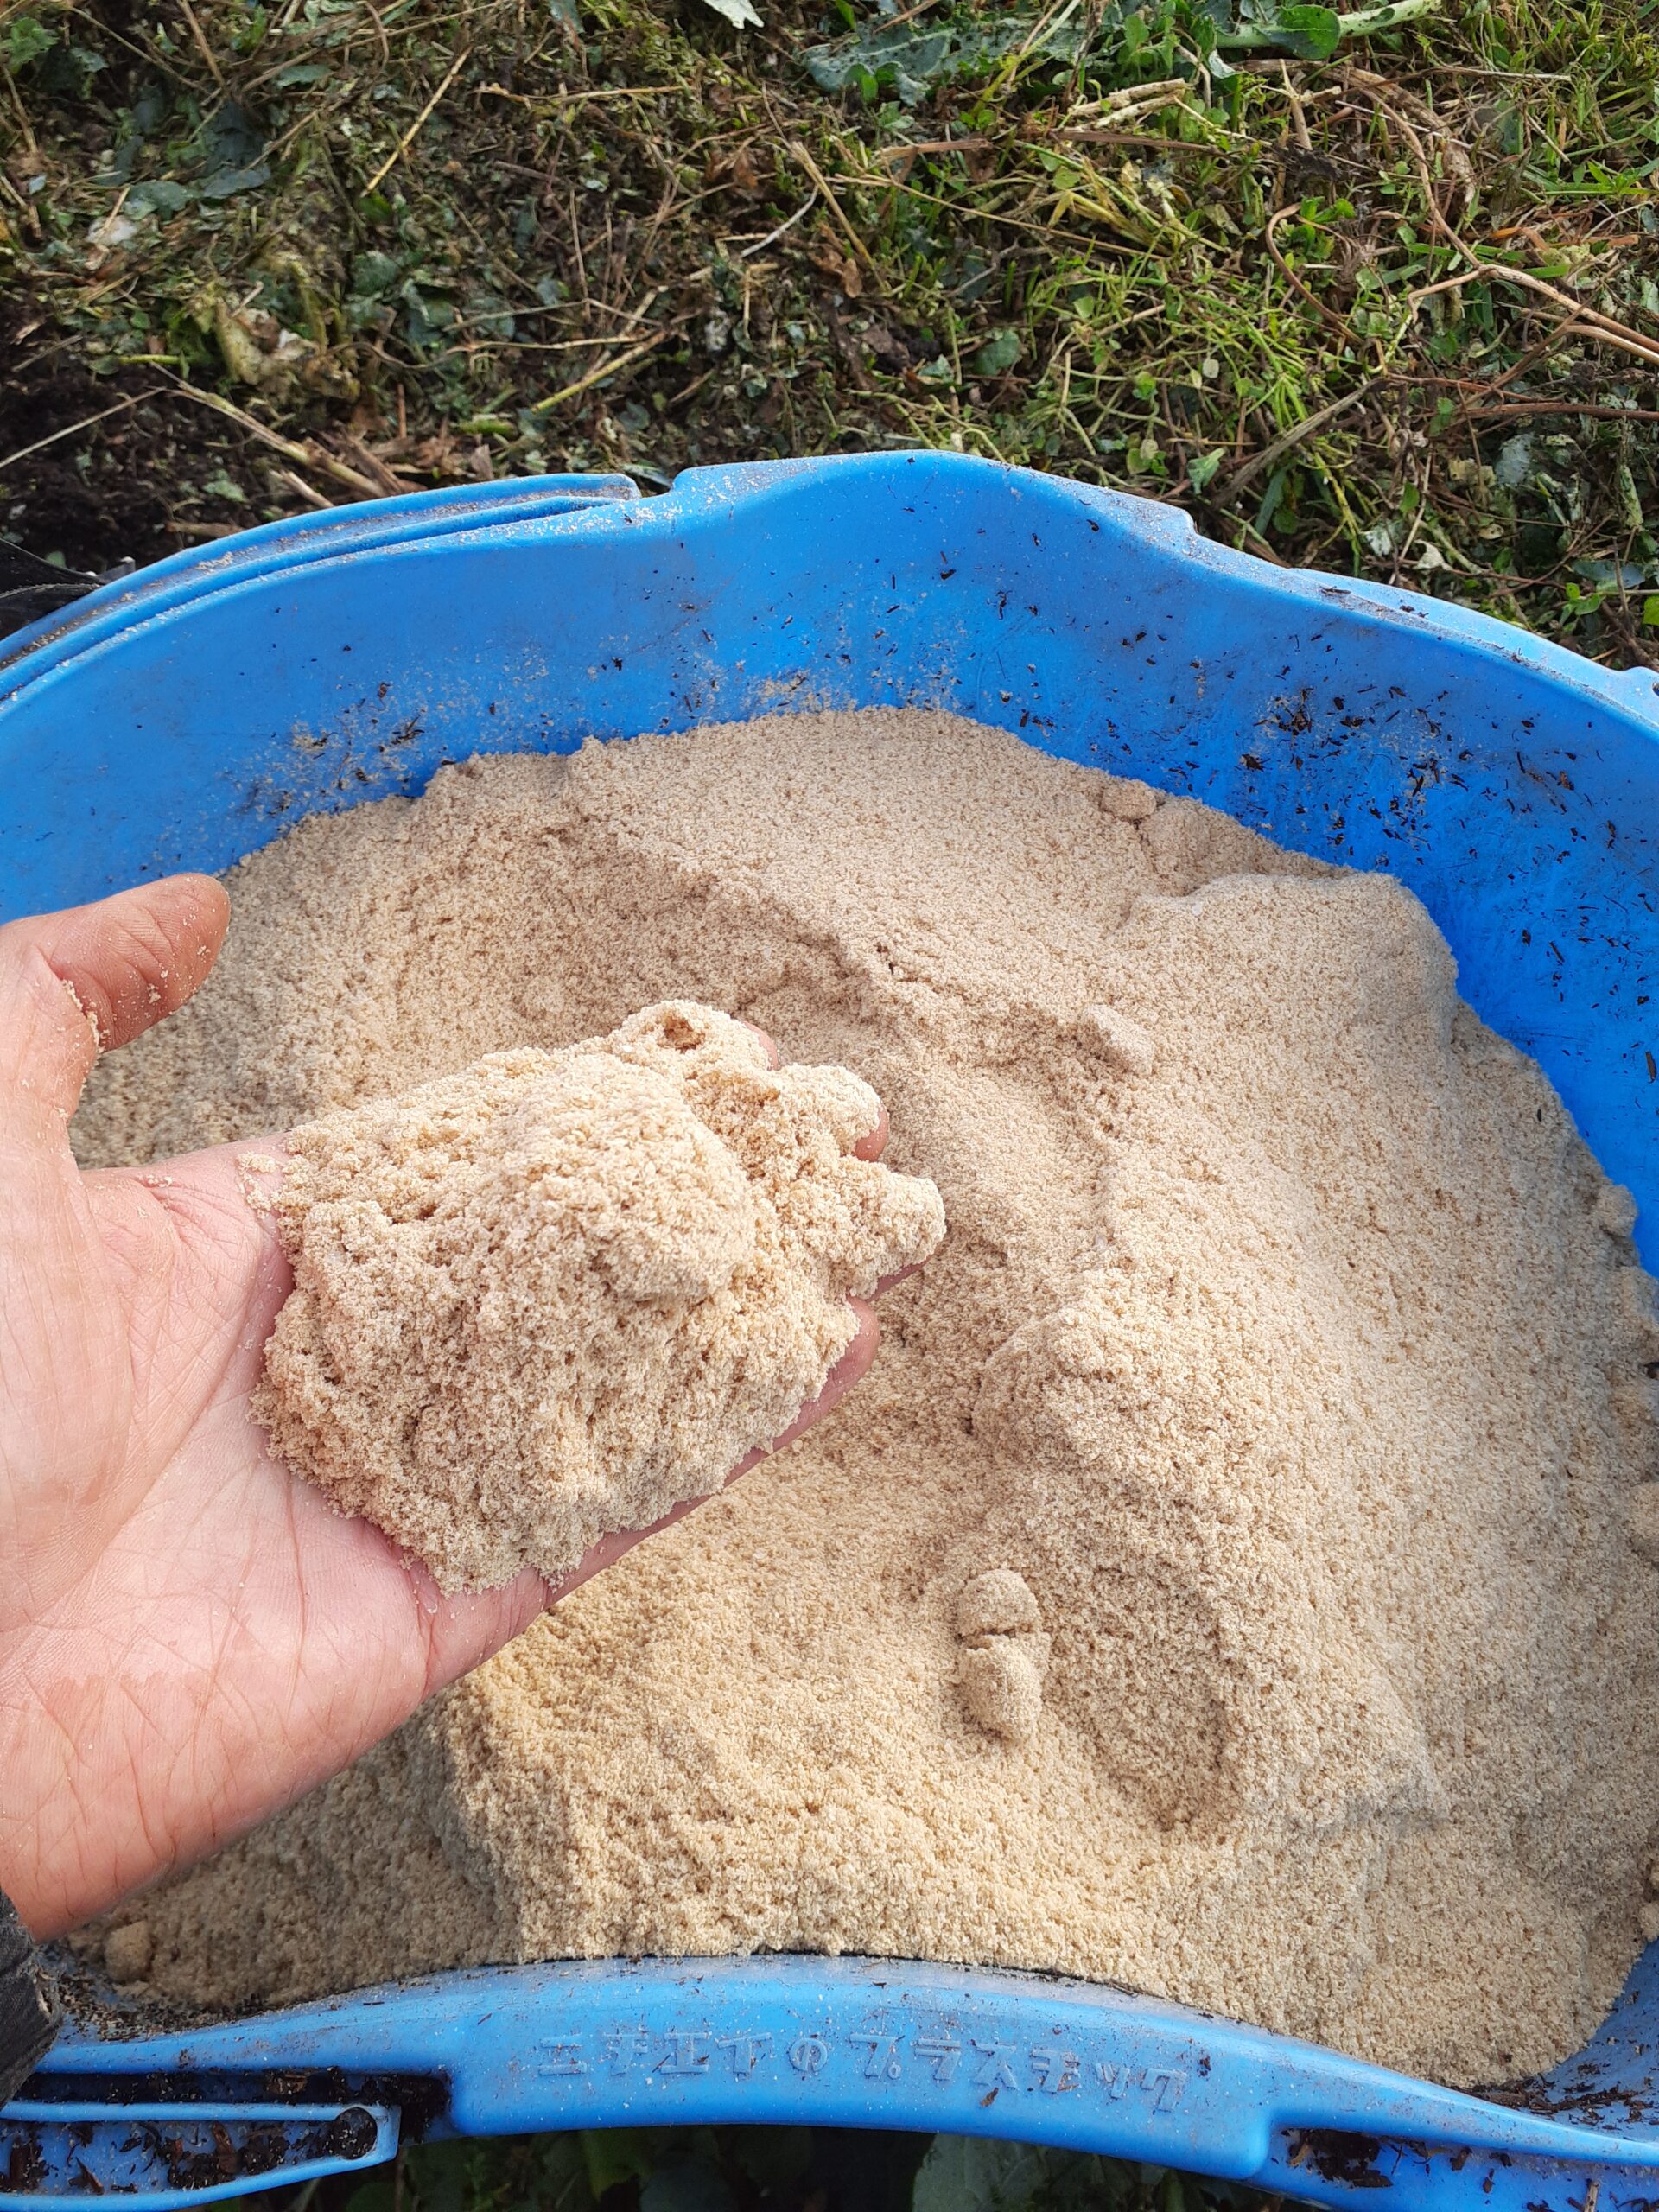 米ぬか活用編①土ごと発酵 畑を丸ごと発酵させてふかふか土づくり | 葉月農園 有機農業日誌